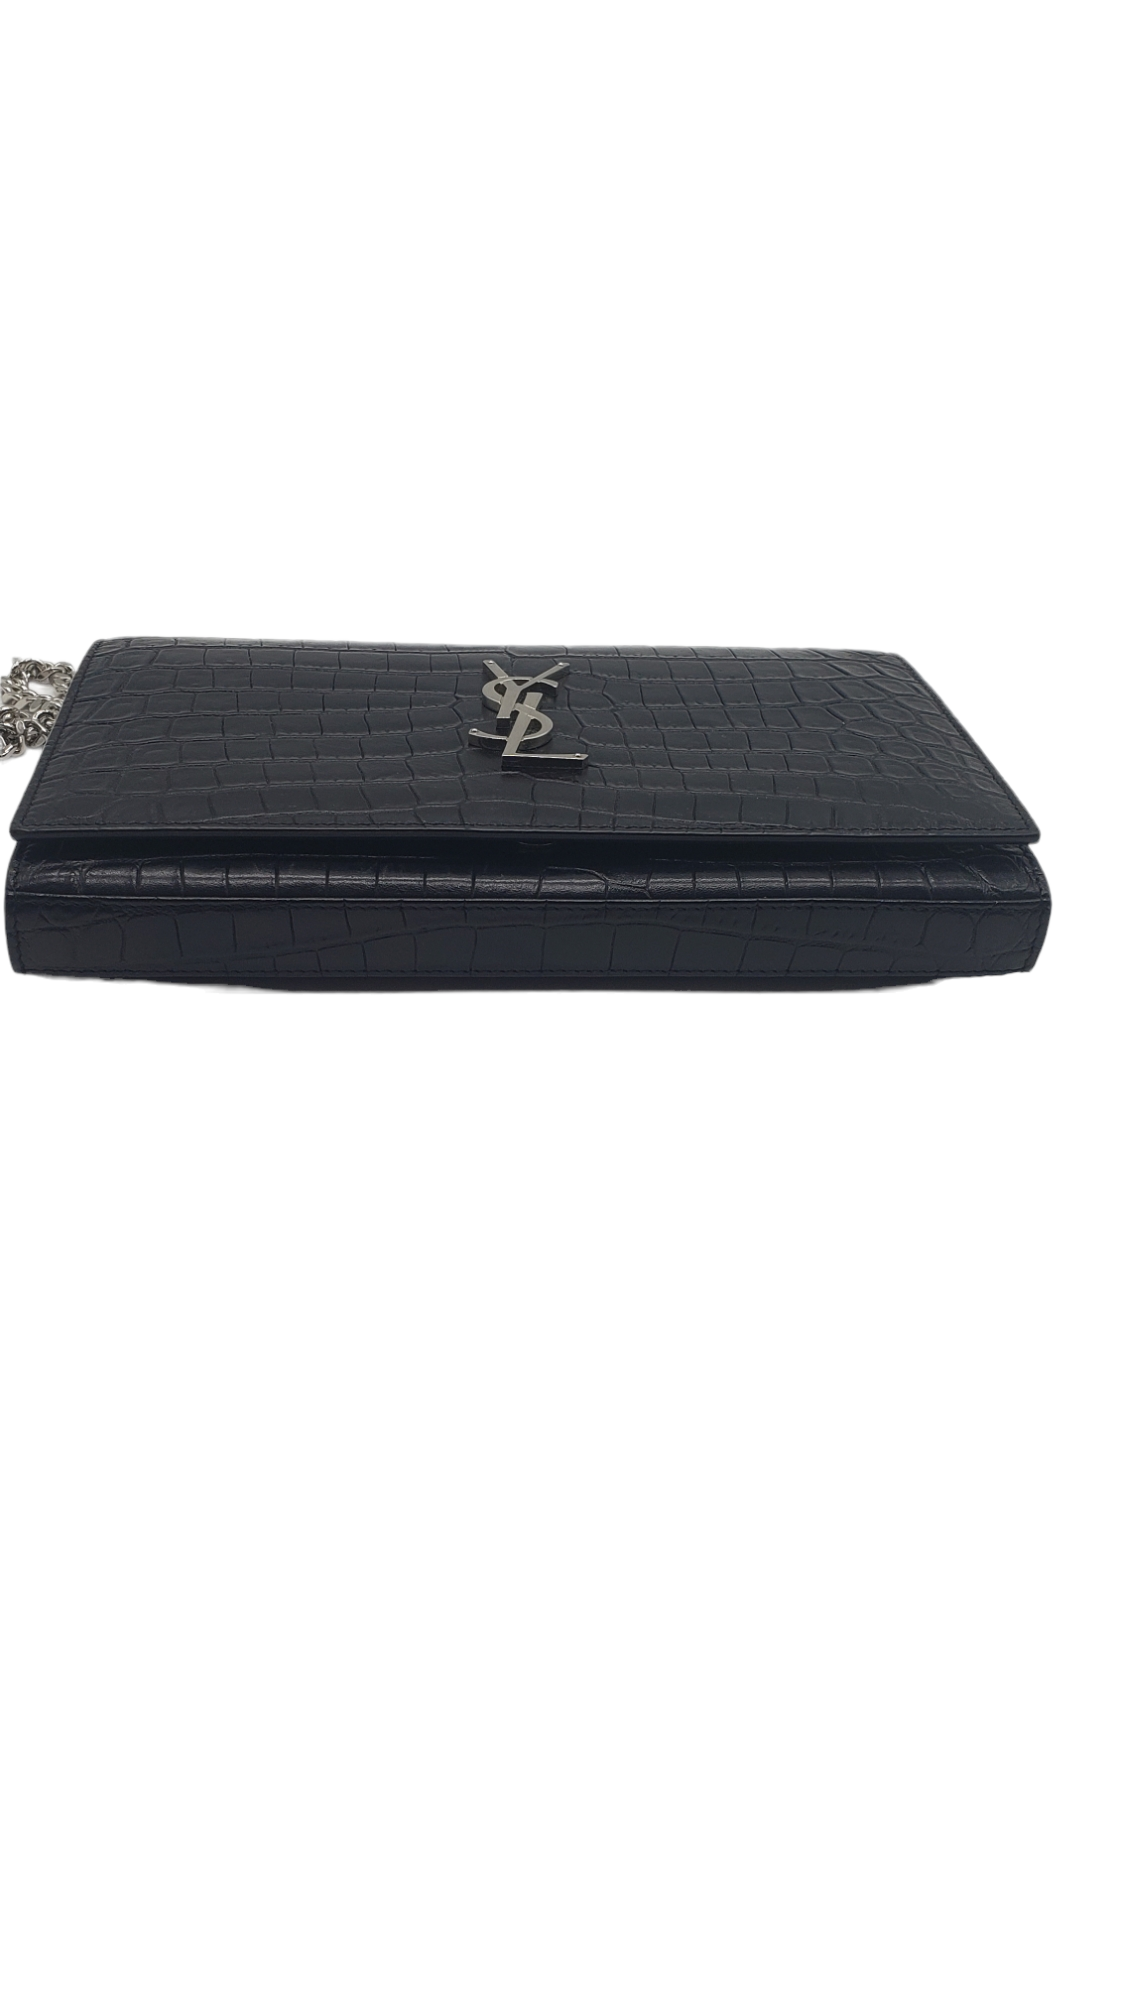 Saint Laurent YSL Black Croc Embossed Cassandre Chain Wallet